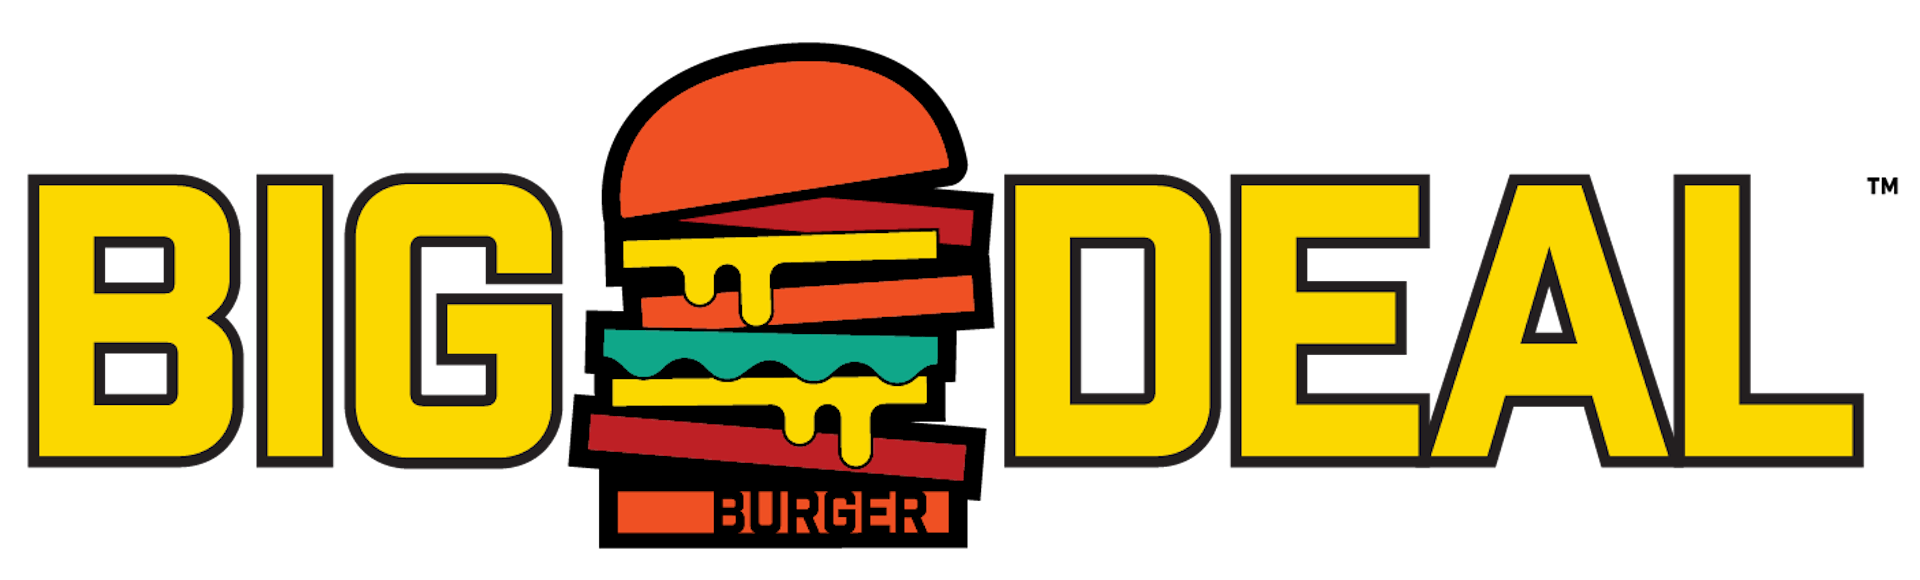 Big Deal Burger Co